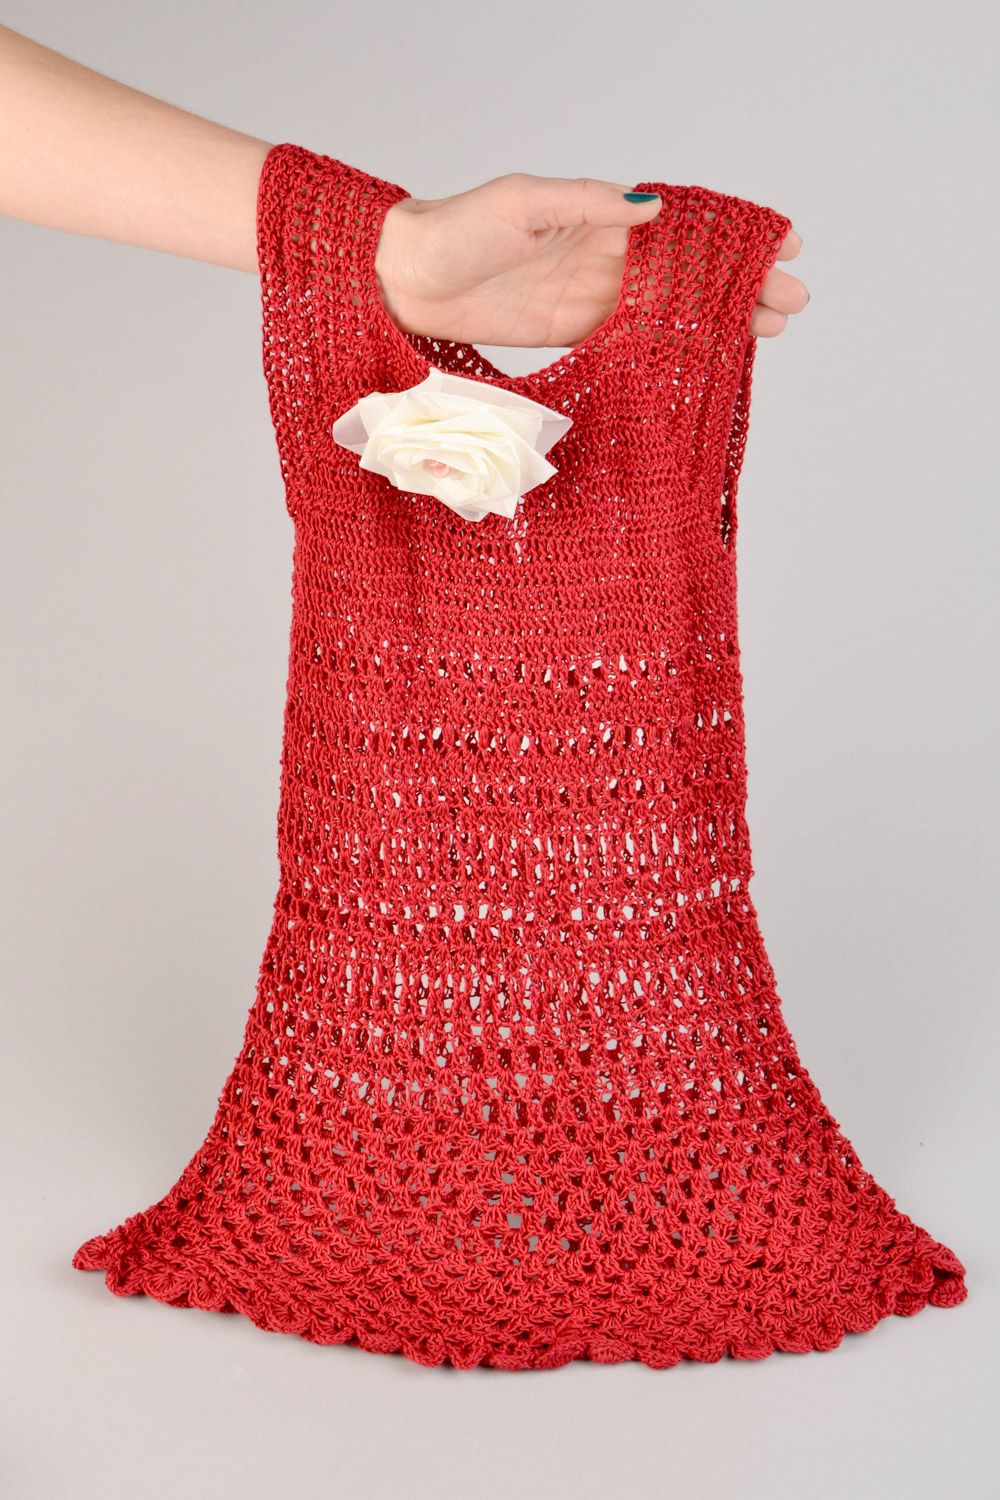 Belle robe tricotée pour bébé au crochet rouge sans manches avec rose faite main photo 1